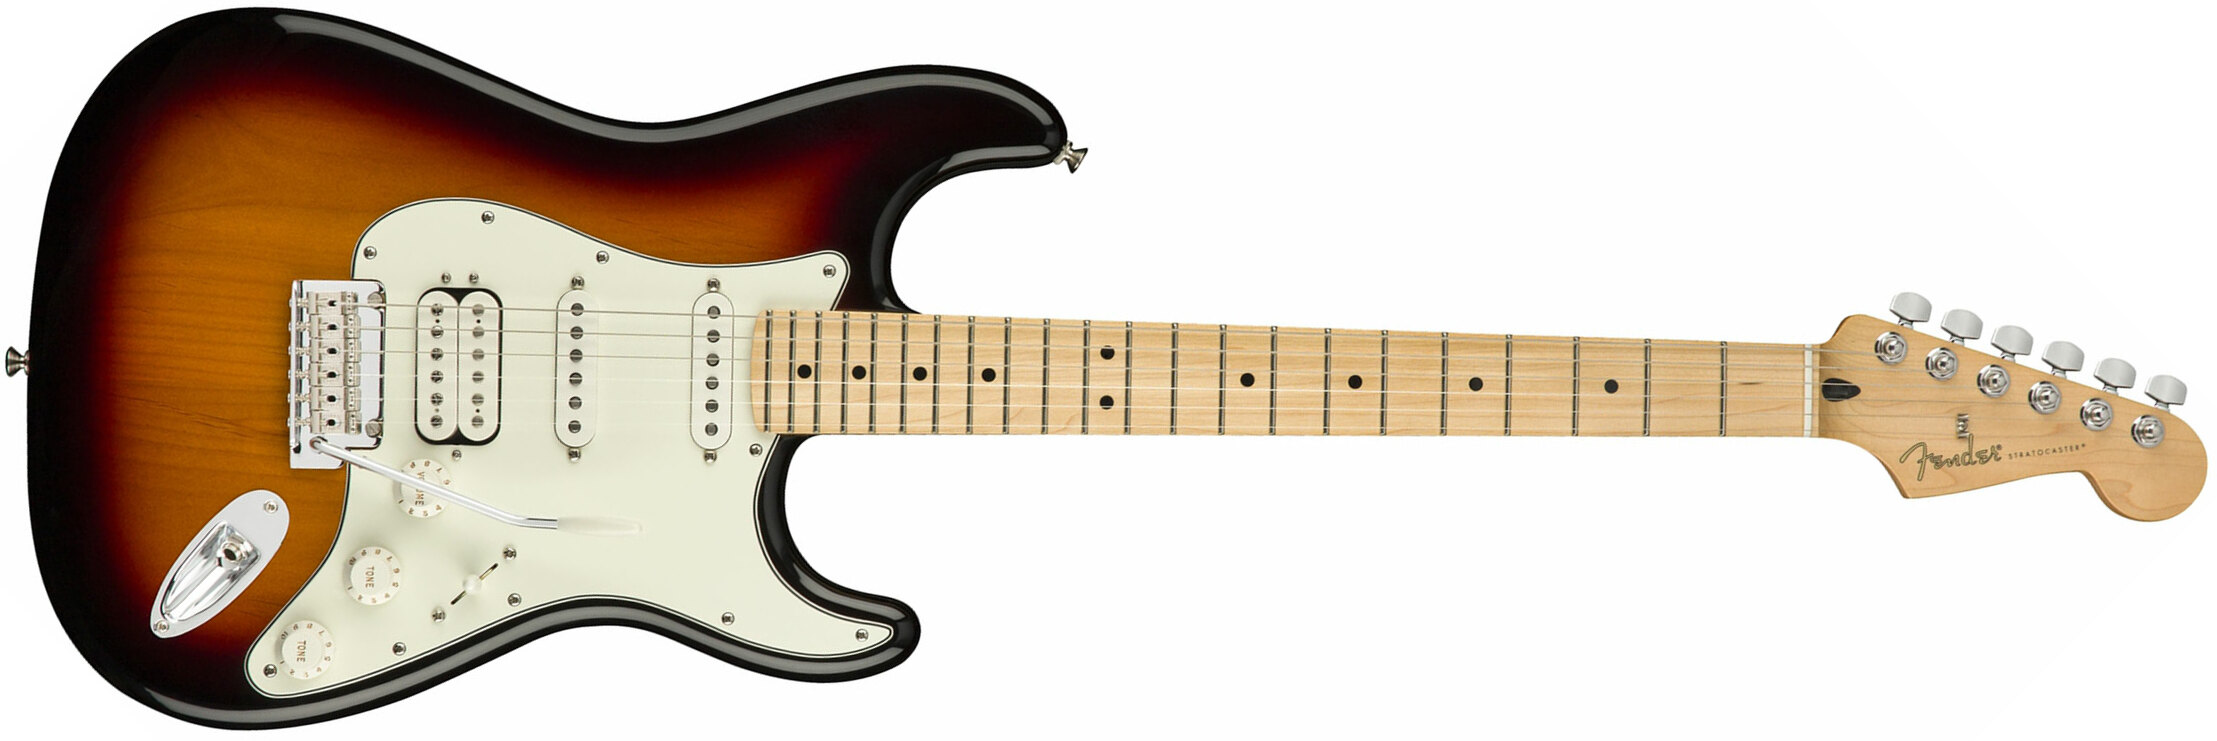 Fender Strat Player Mex Hss Mn - 3-color Sunburst - Str shape electric guitar - Main picture